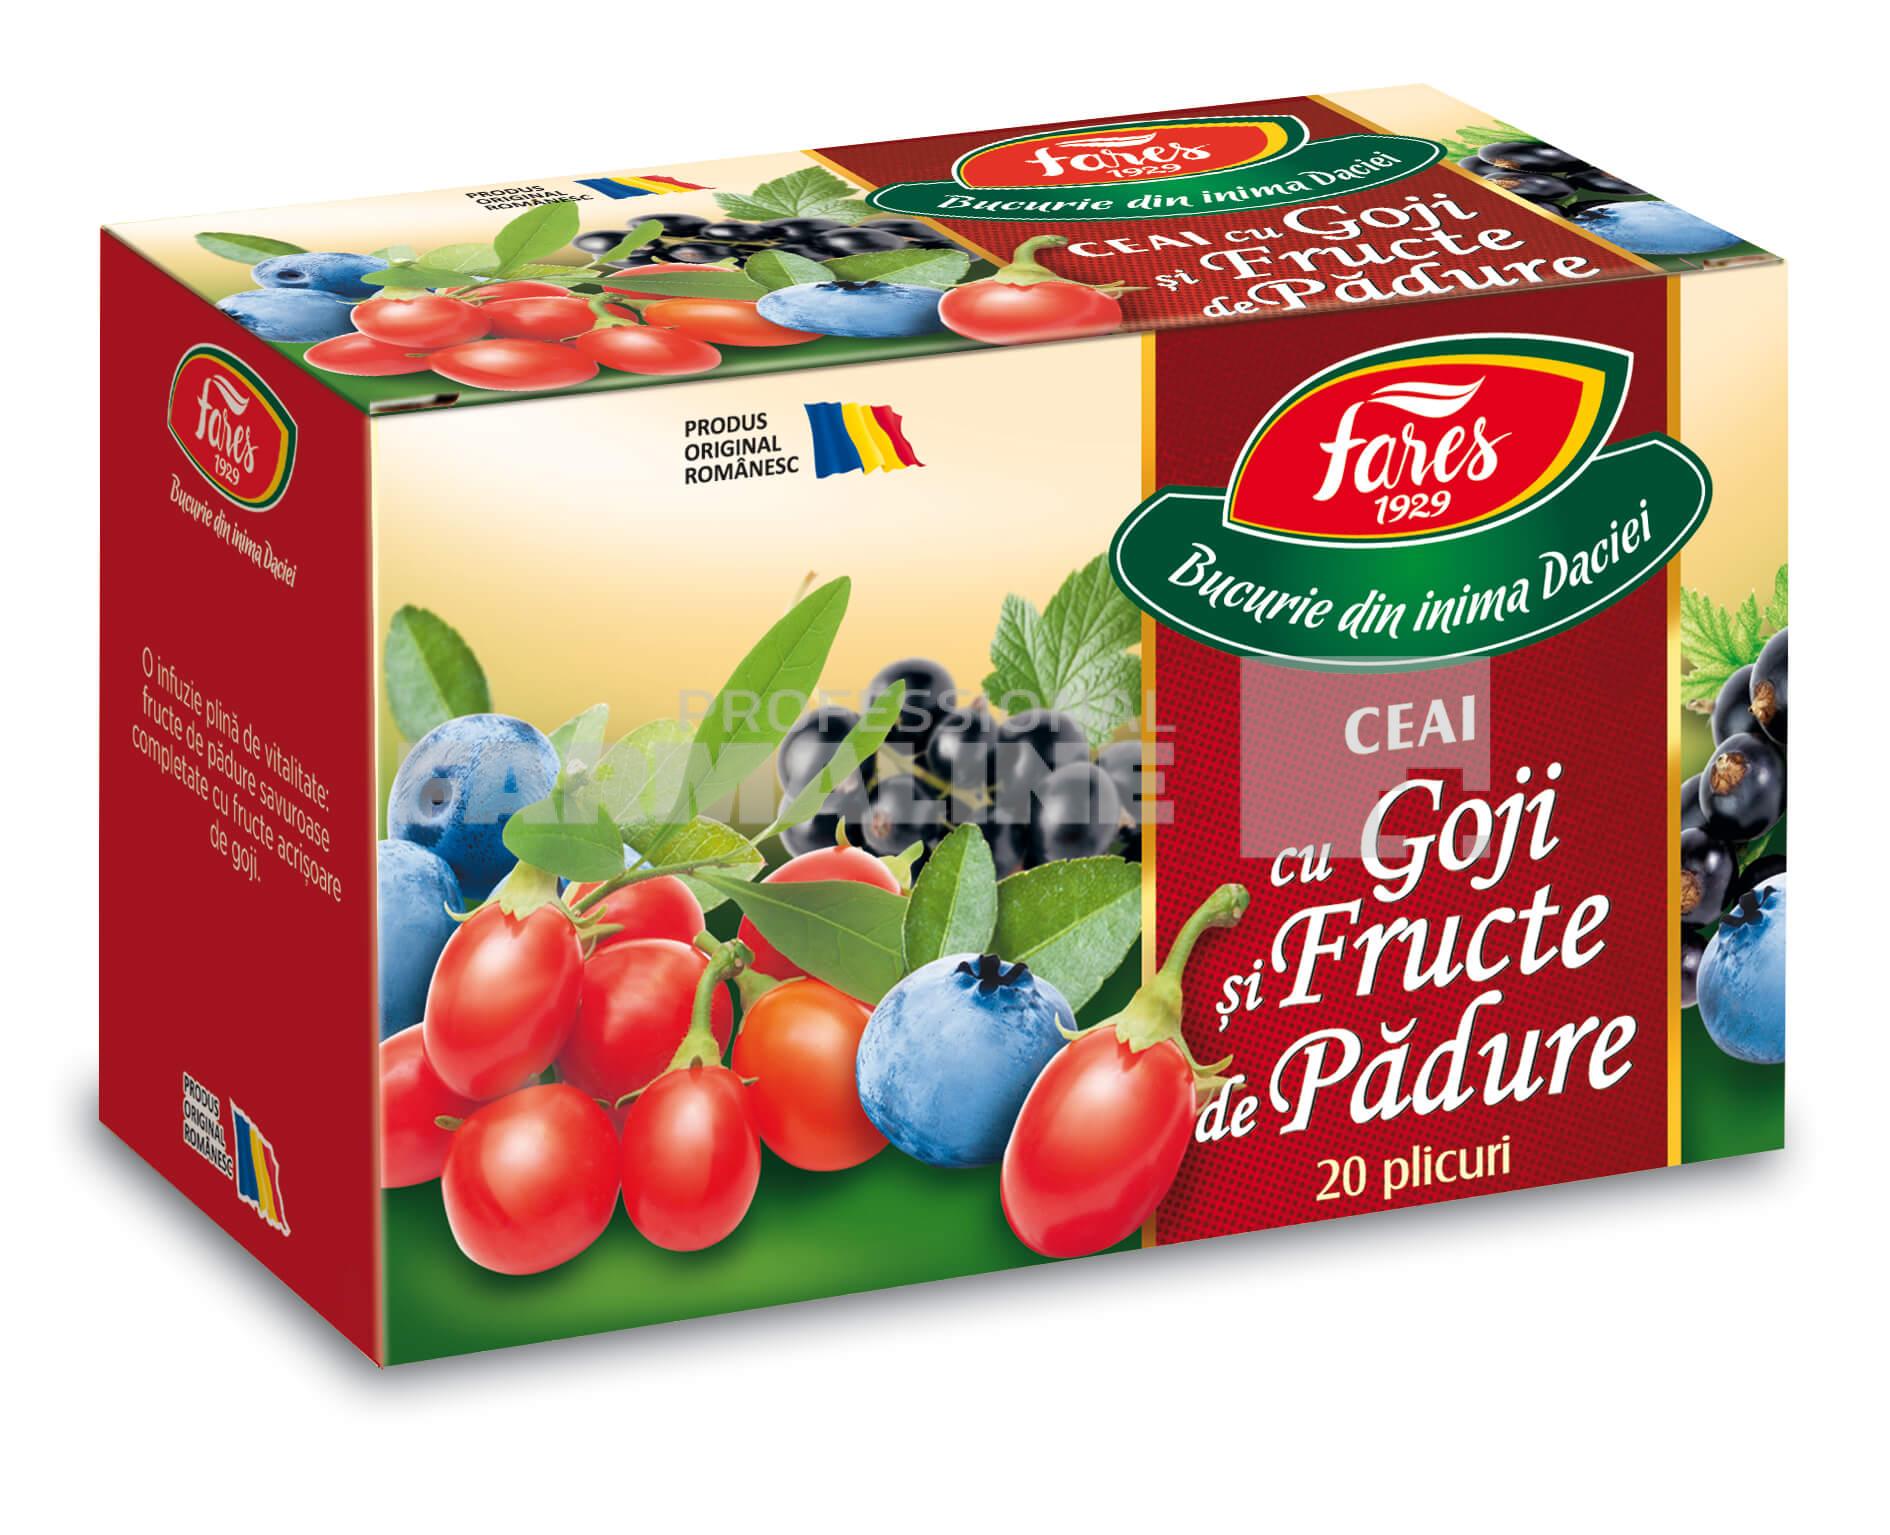 Ceai Goji si Fructe de padure - A20 plicuri